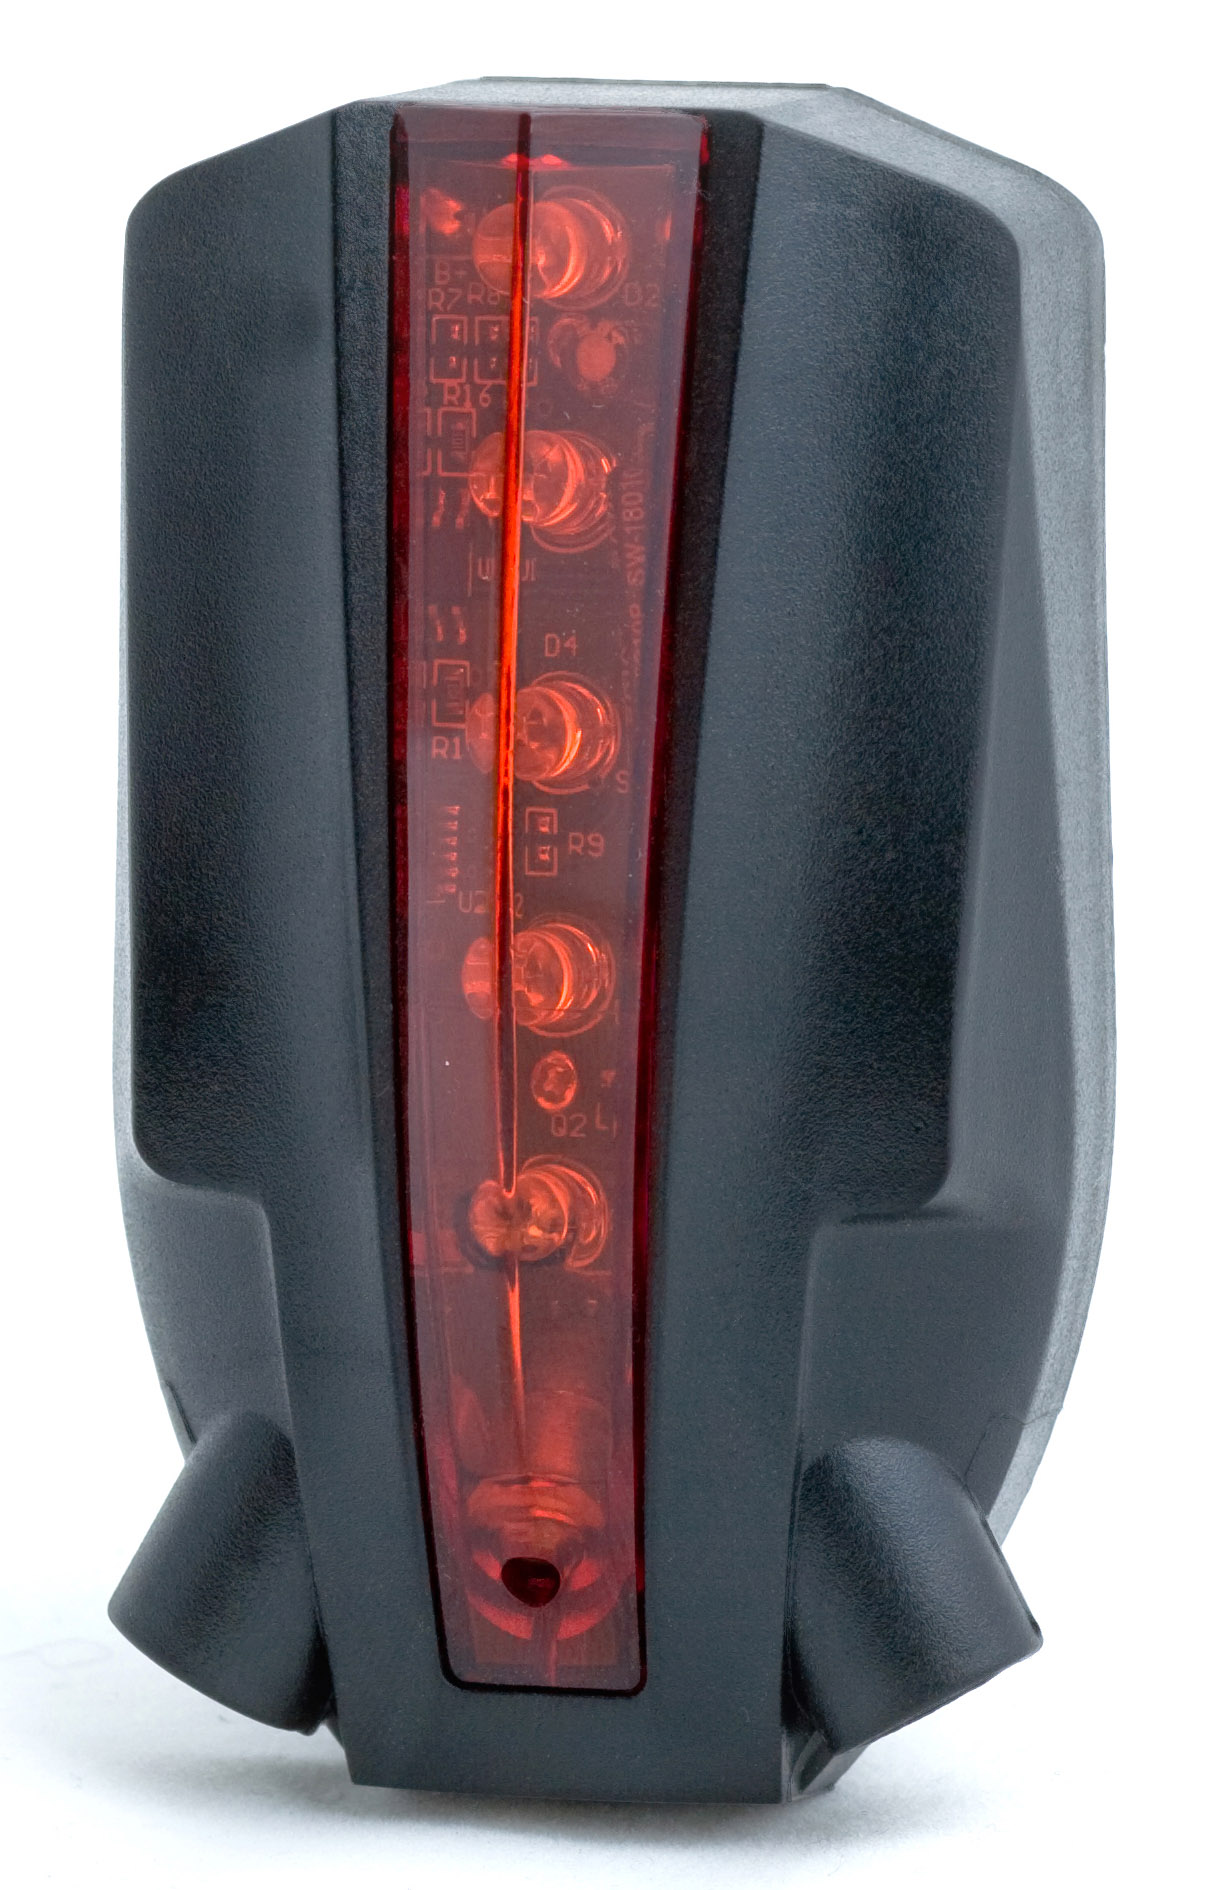  Задний фонарь для велосипеда UltraFire PRO-L09T 2019